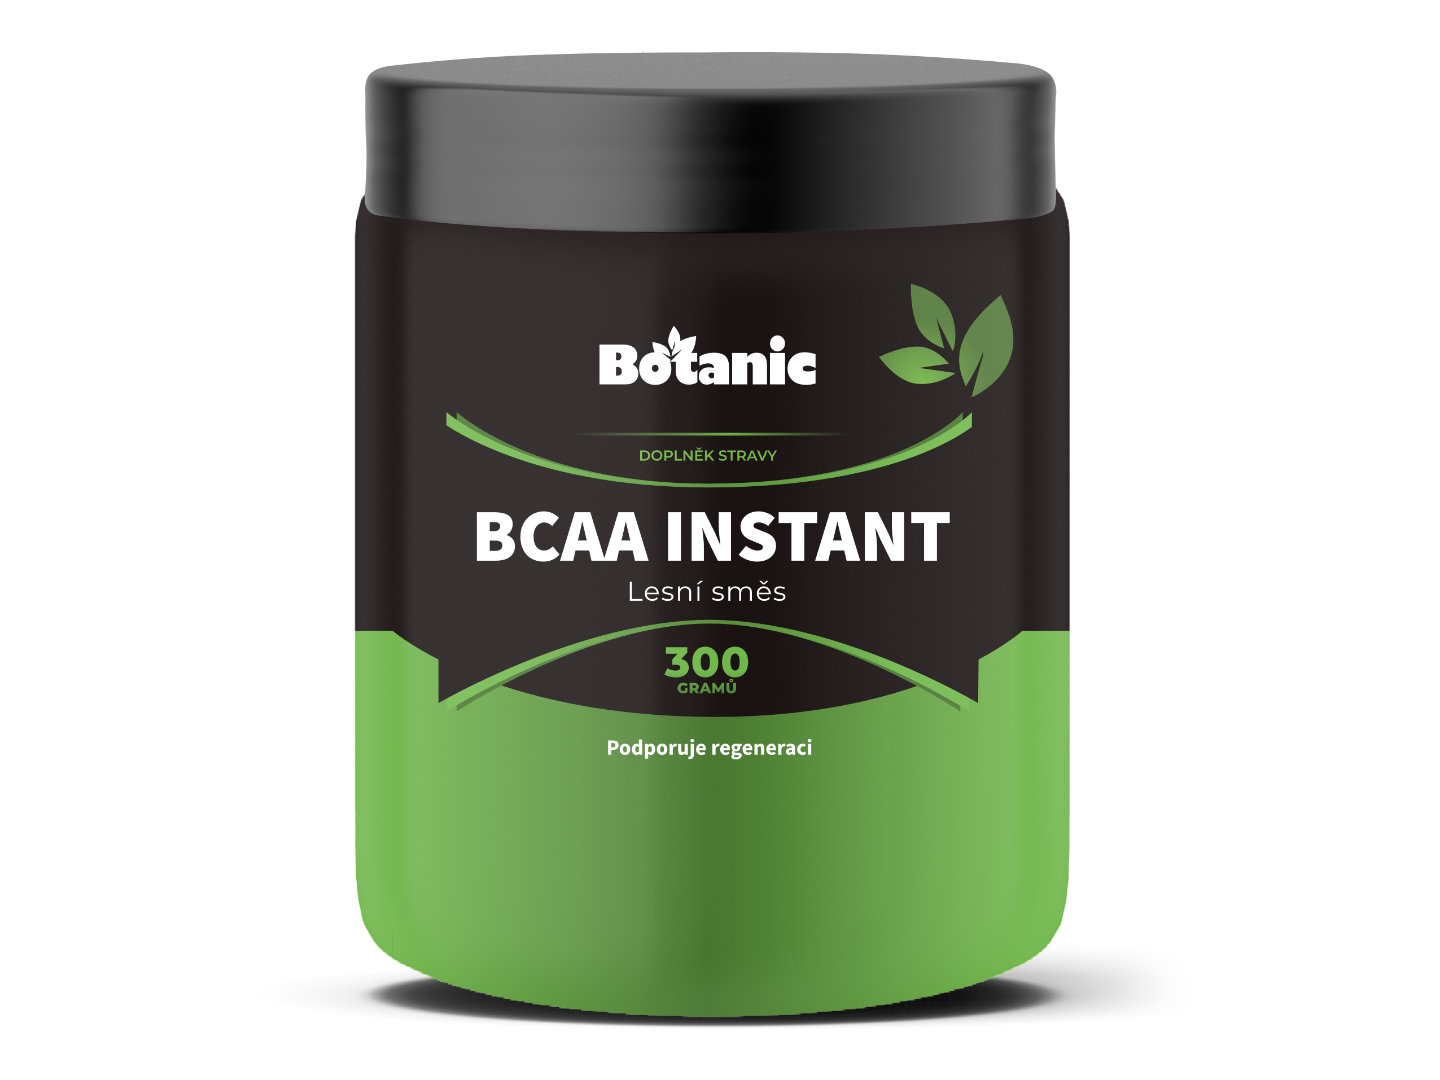 Botanic BCAA Instant - Lesní směs 300g